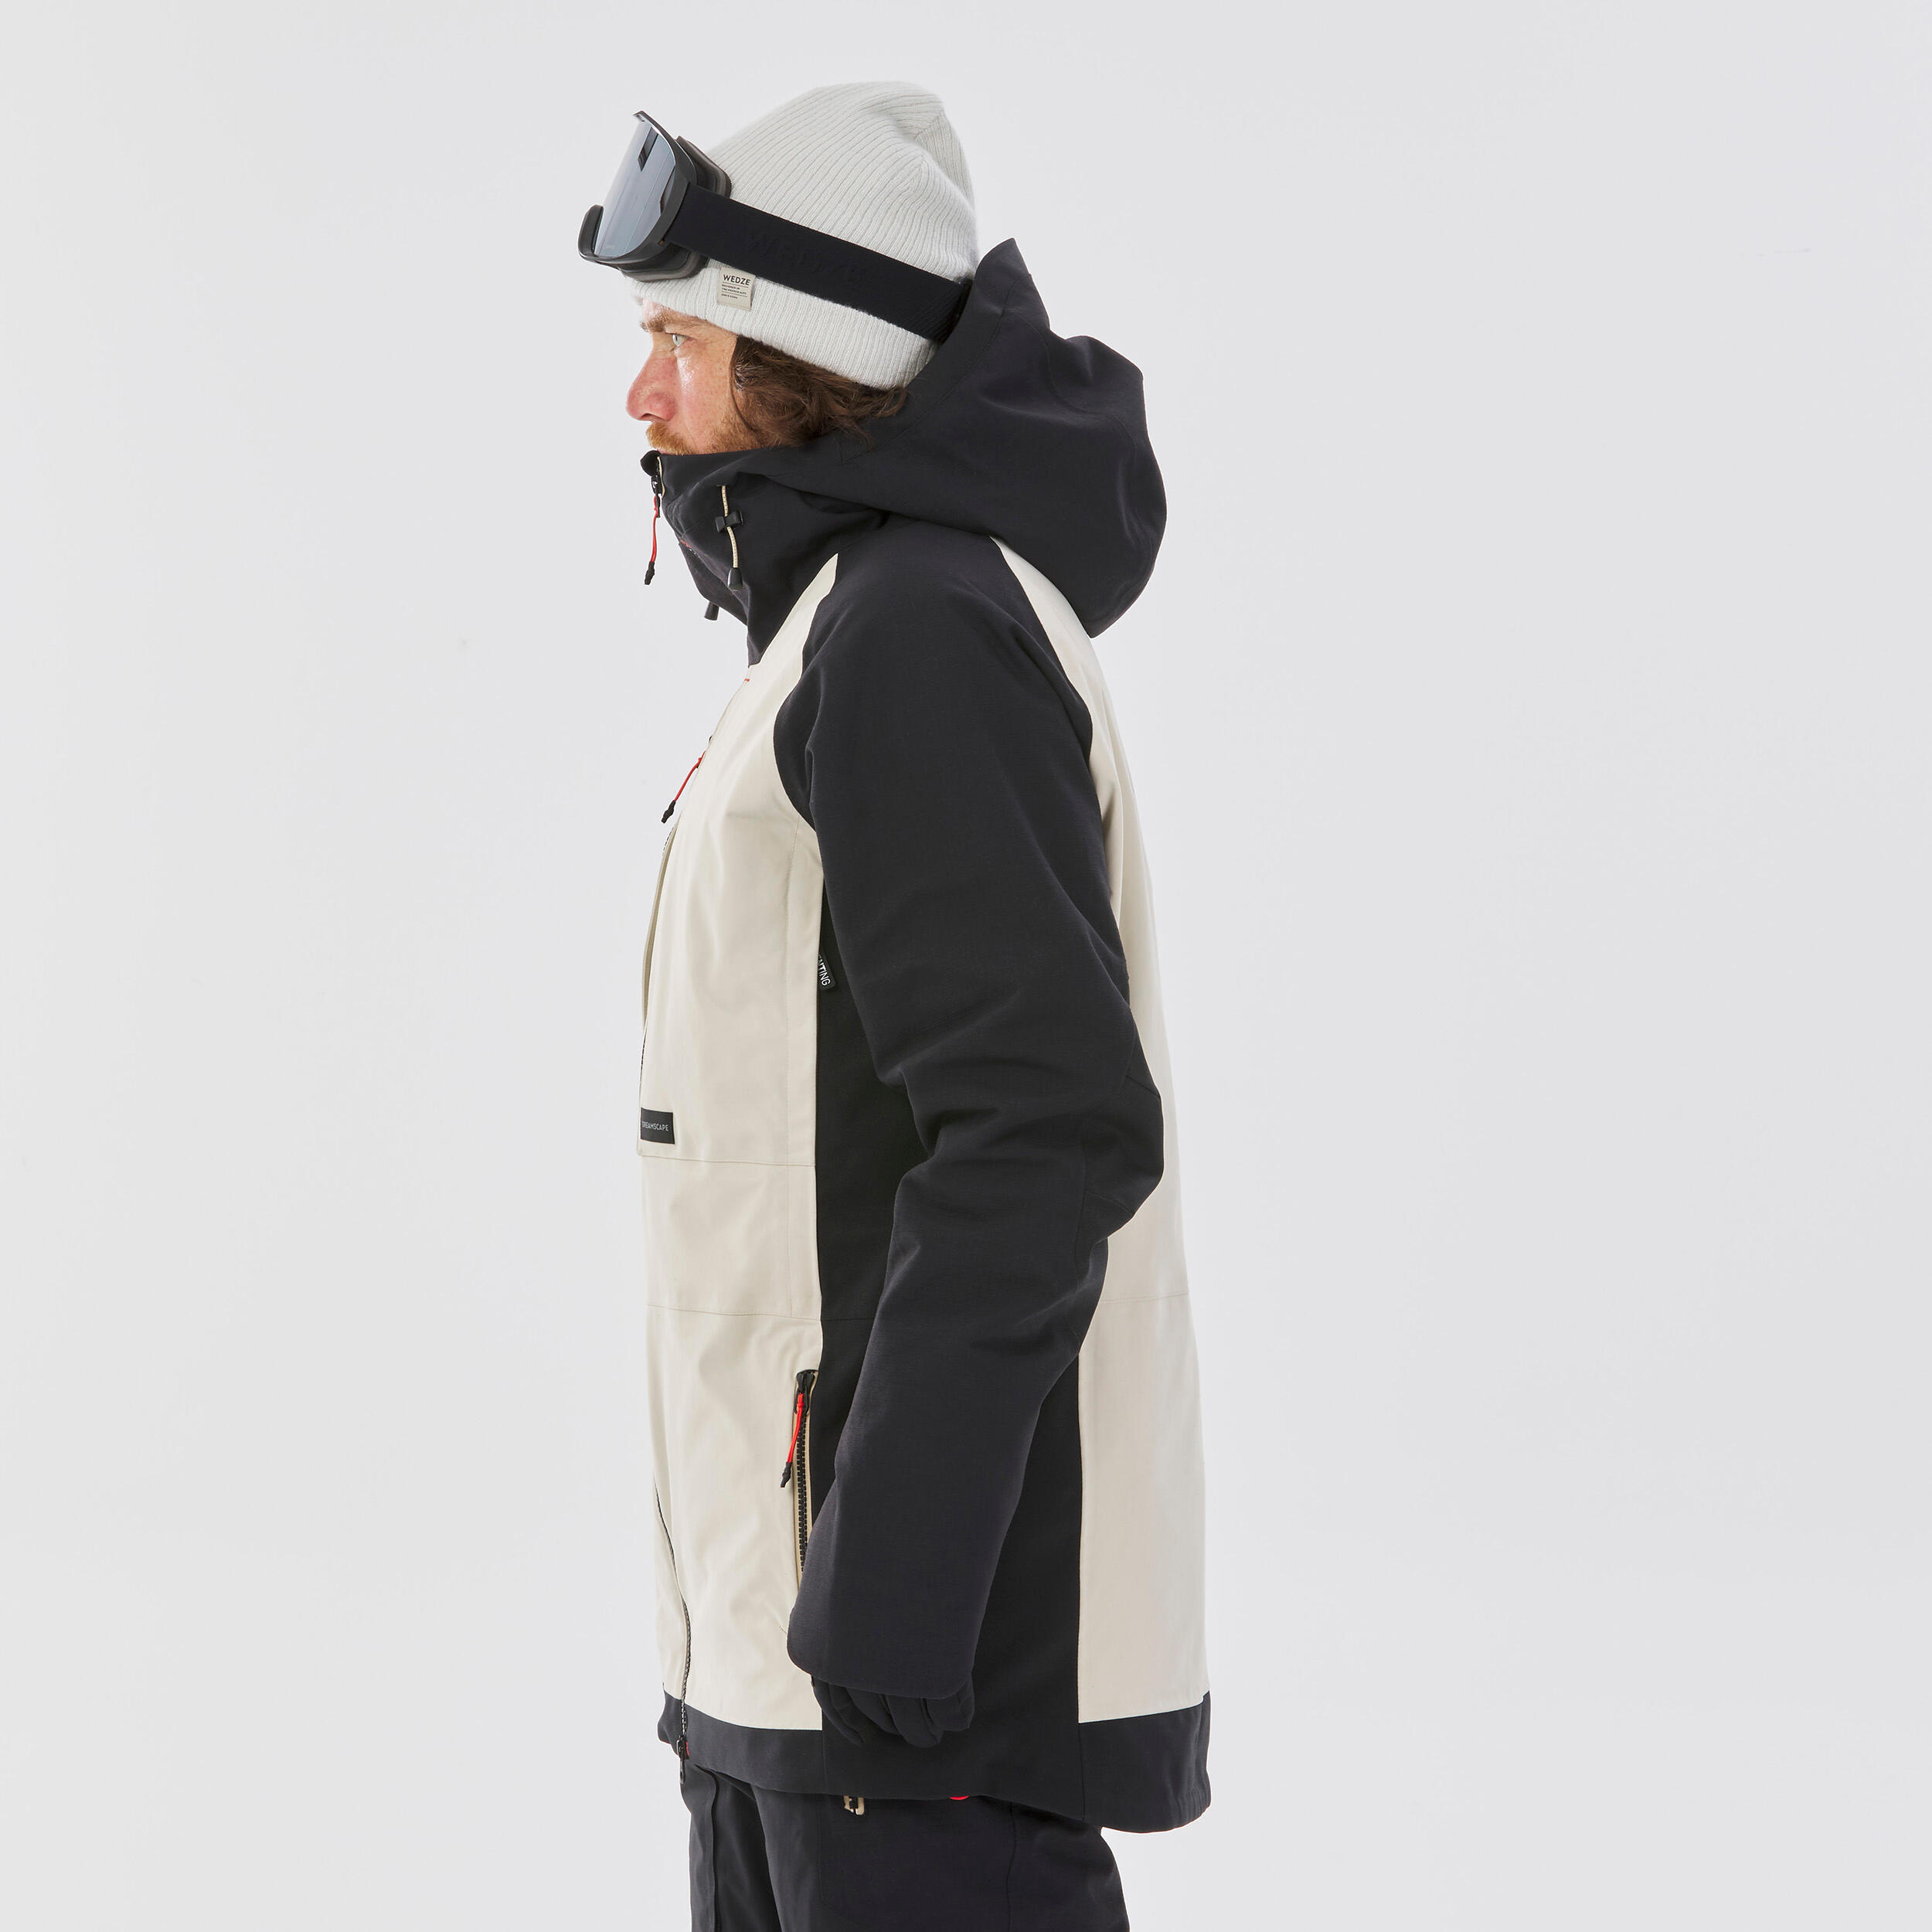 Men's Ultra Resistant Snowboard Jacket -  SNB 900 UP Beige 5/20